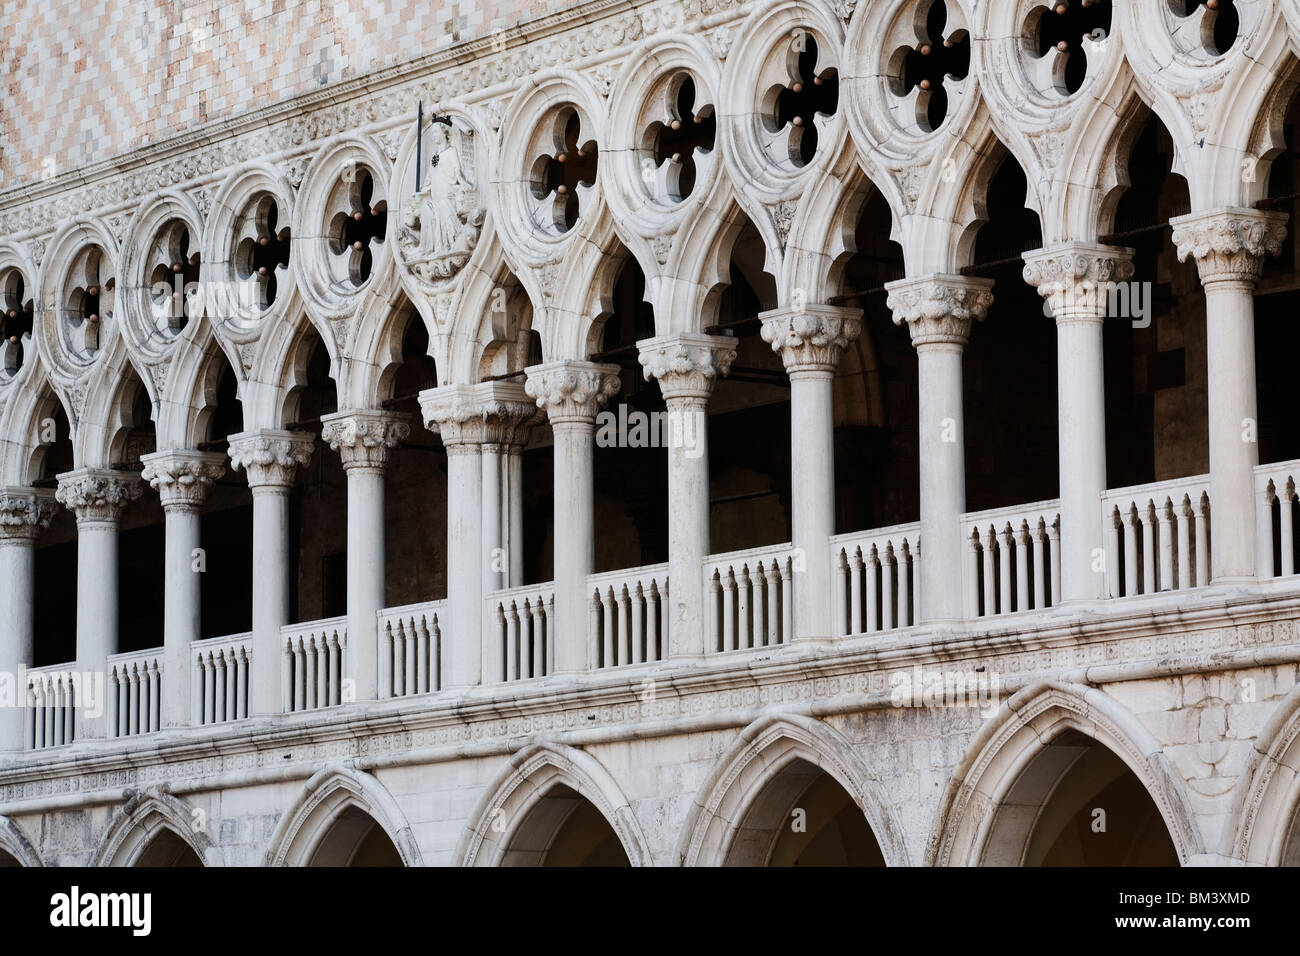 Venedig - Dogenpalast - Palazzo Ducale - zeigt der gotischen Architektur hautnah Stockfoto